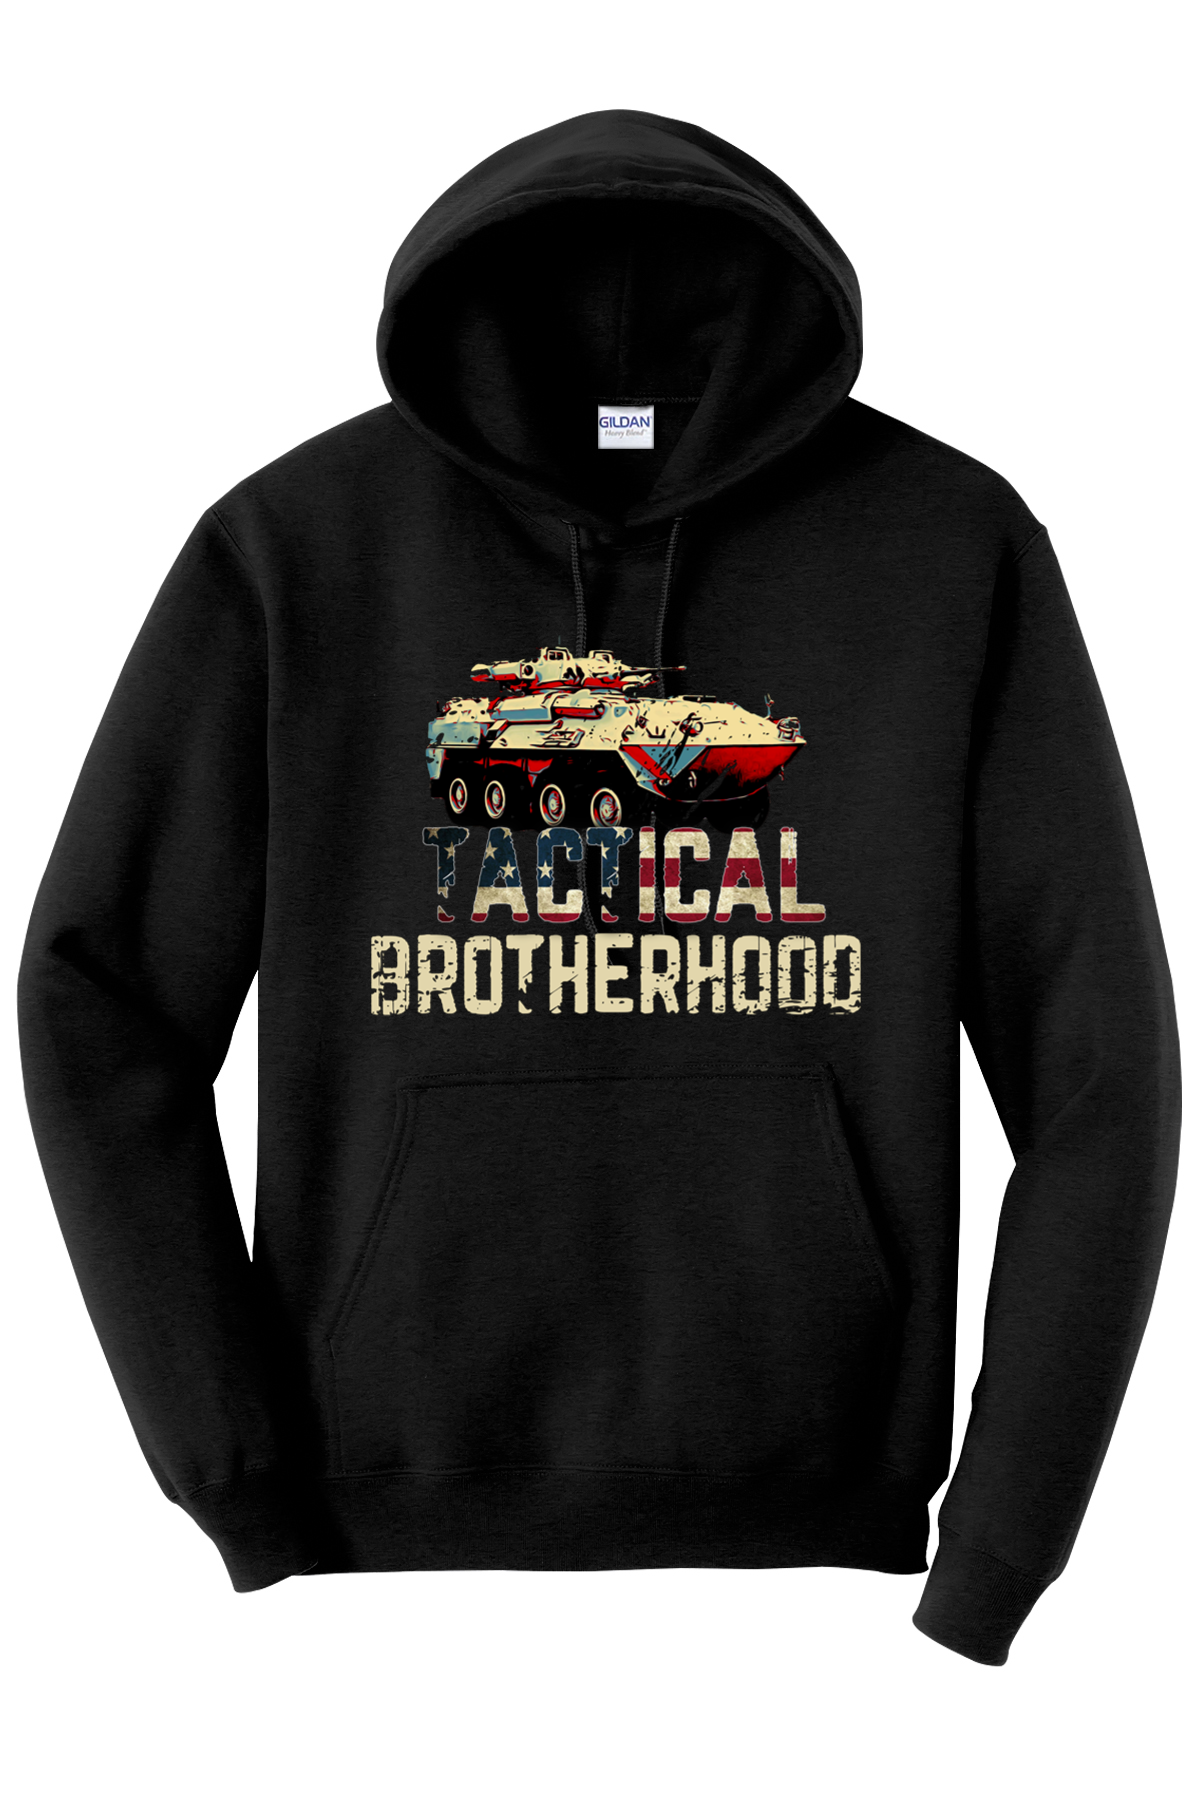 LAV 2 - Tactical Brotherhood Hoodie